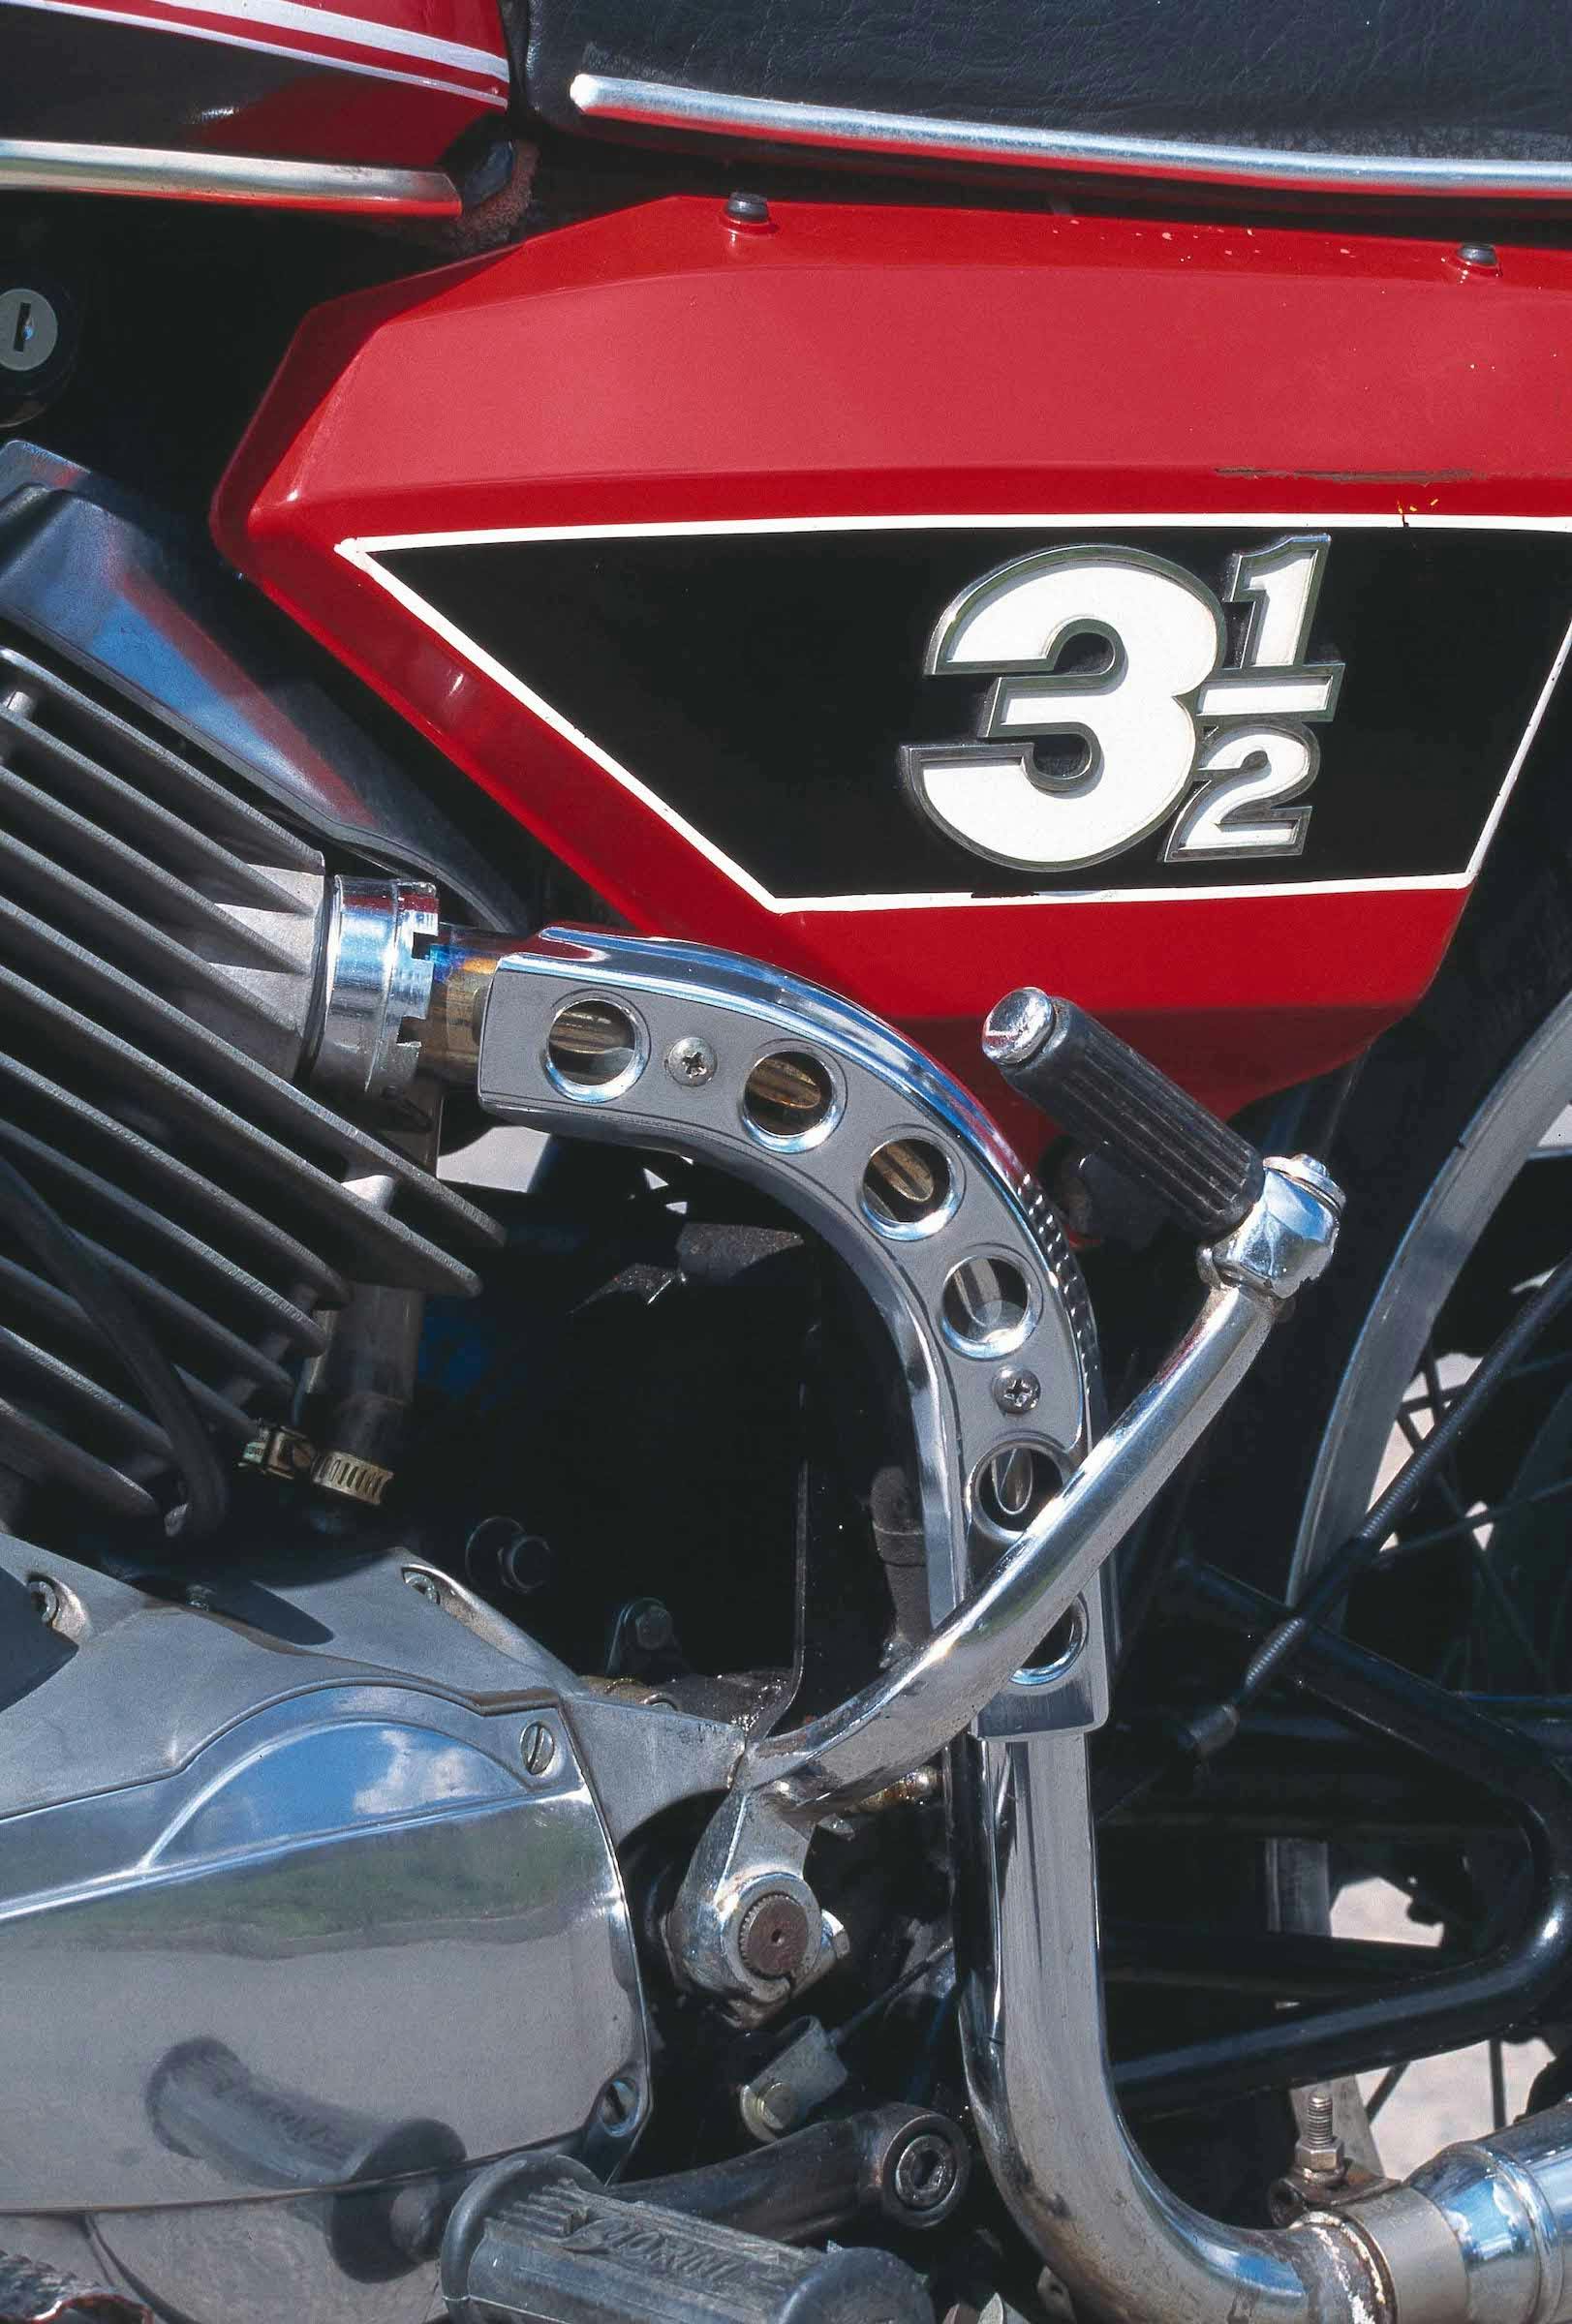 Moto Morini 3-5 Sport cover detail